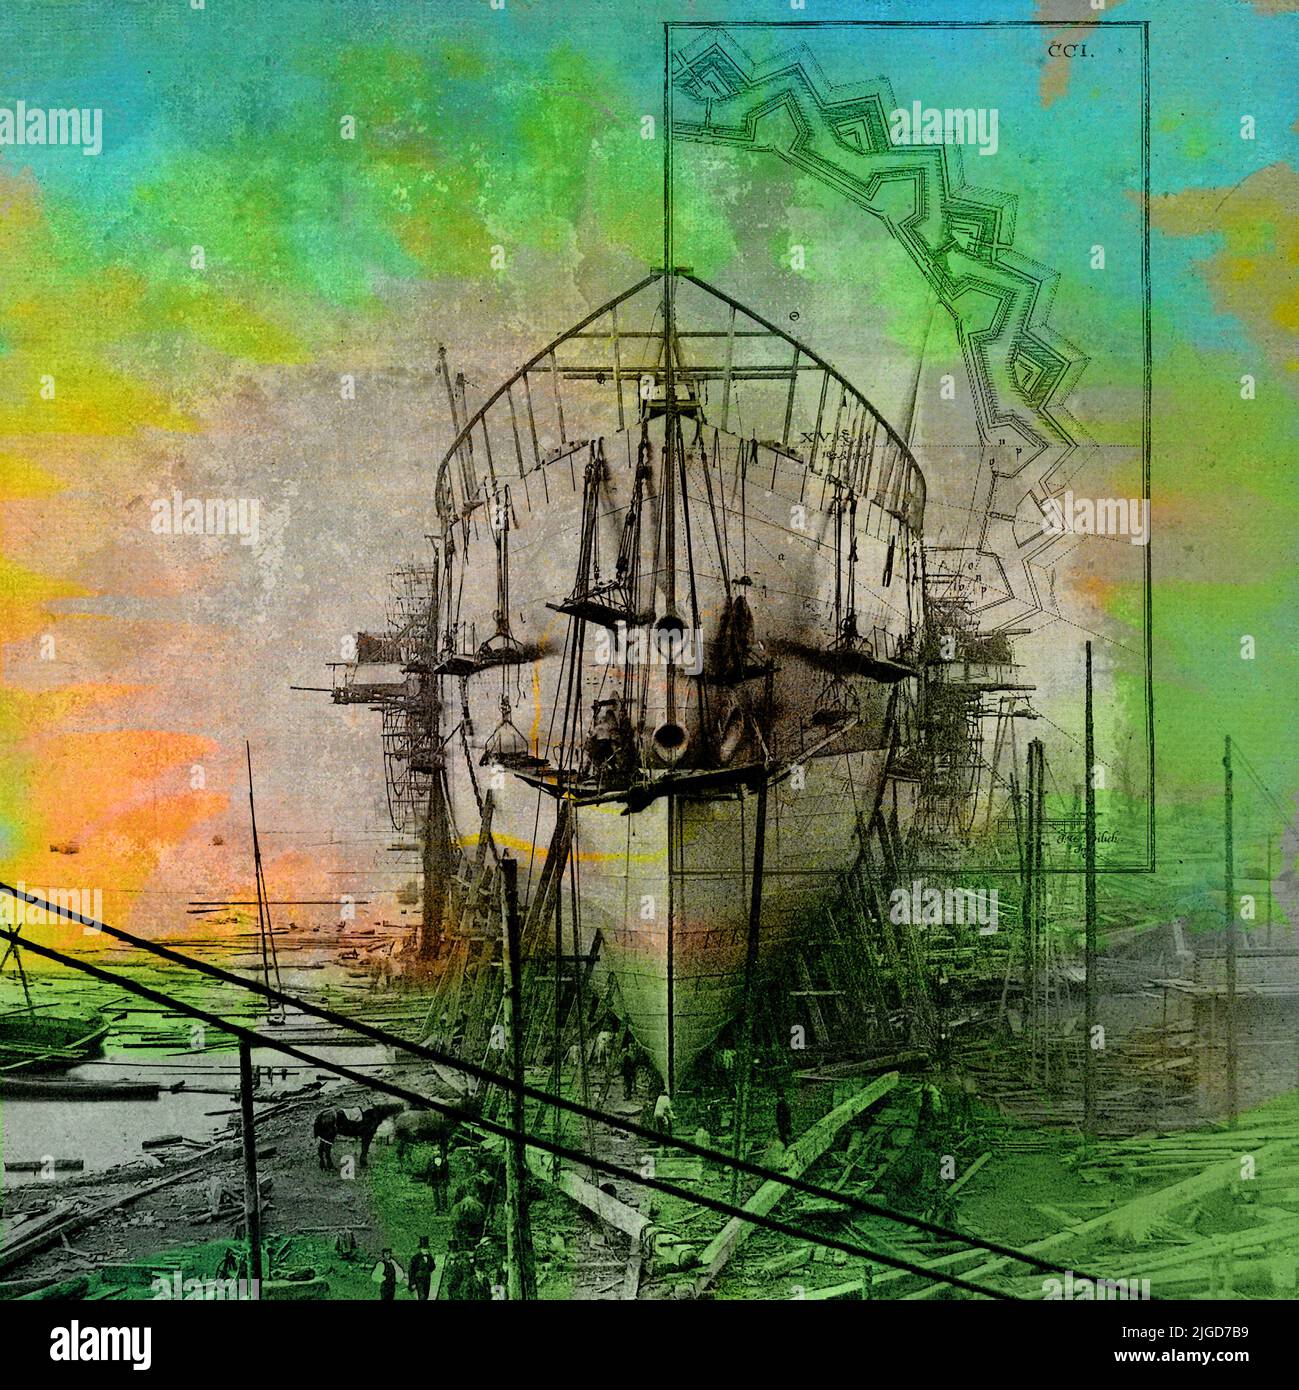 Moderno collage de arte de medios de comunicación con una fotografía de archivo de la construcción naval, revestimientos decorativos y manchas de color. Foto de stock